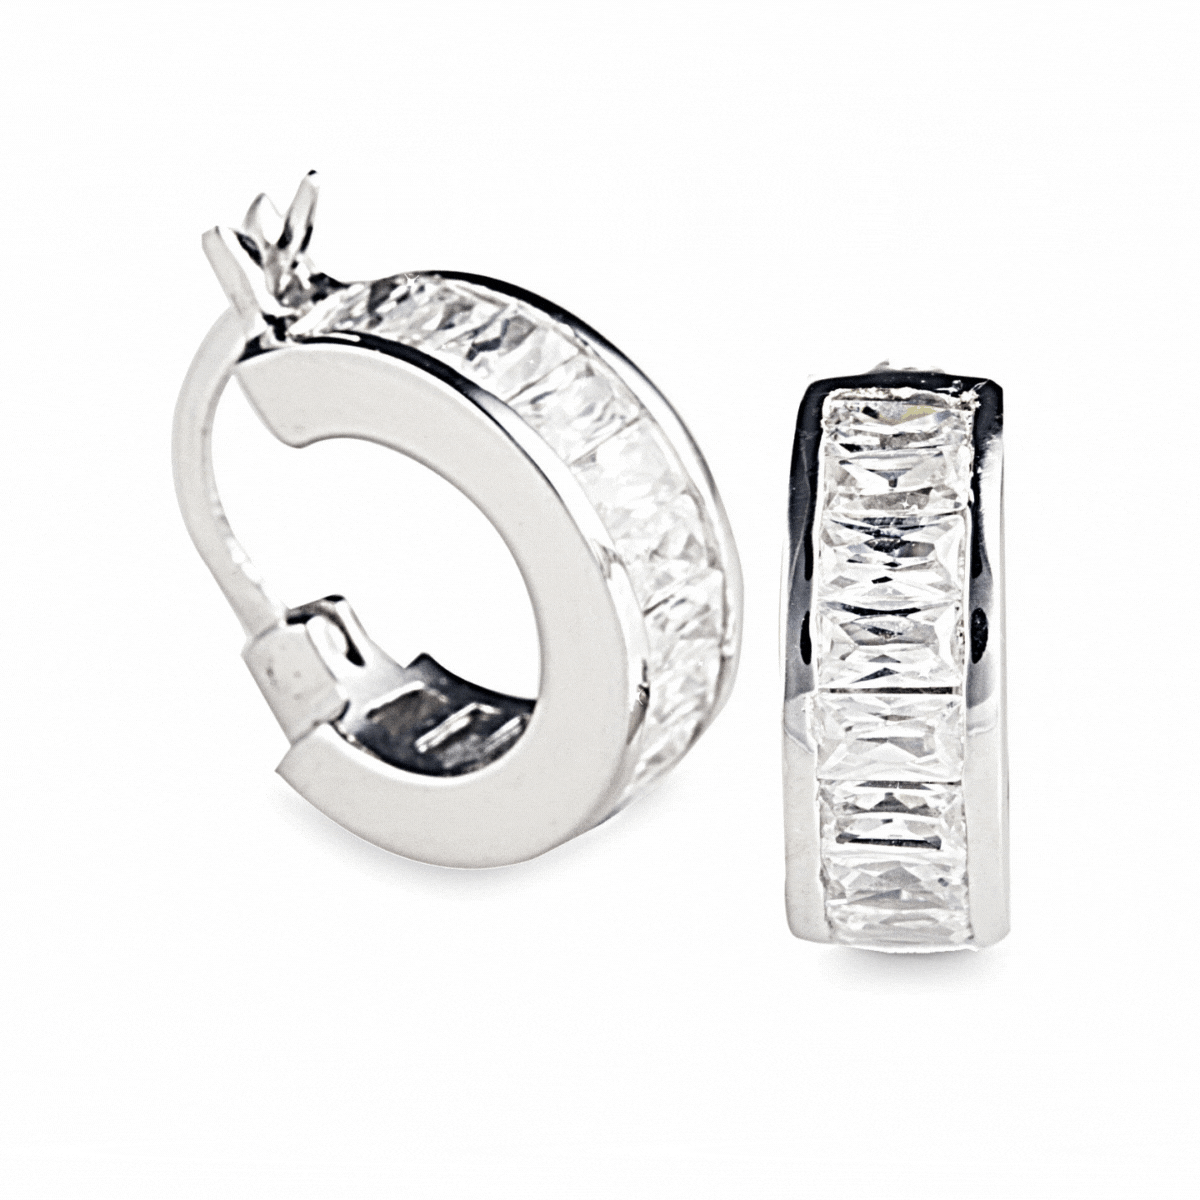 Charlotte Hoop Earrings. 925 Sterling Silver. Worldwide Shipping from Australia